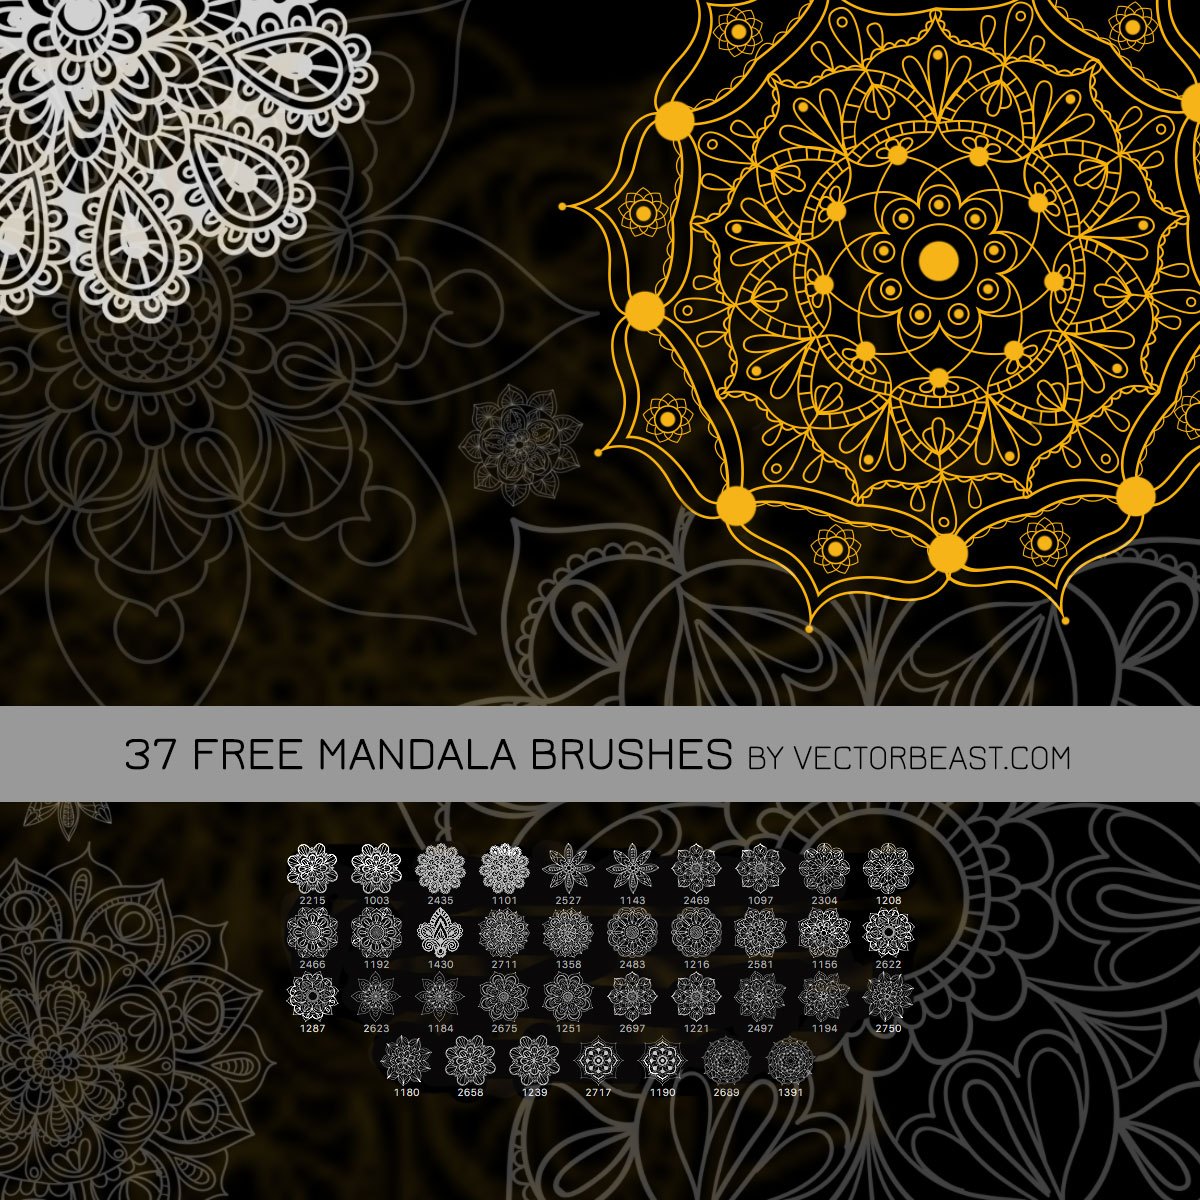 37 Free Mandala Brushes Photoshop brush